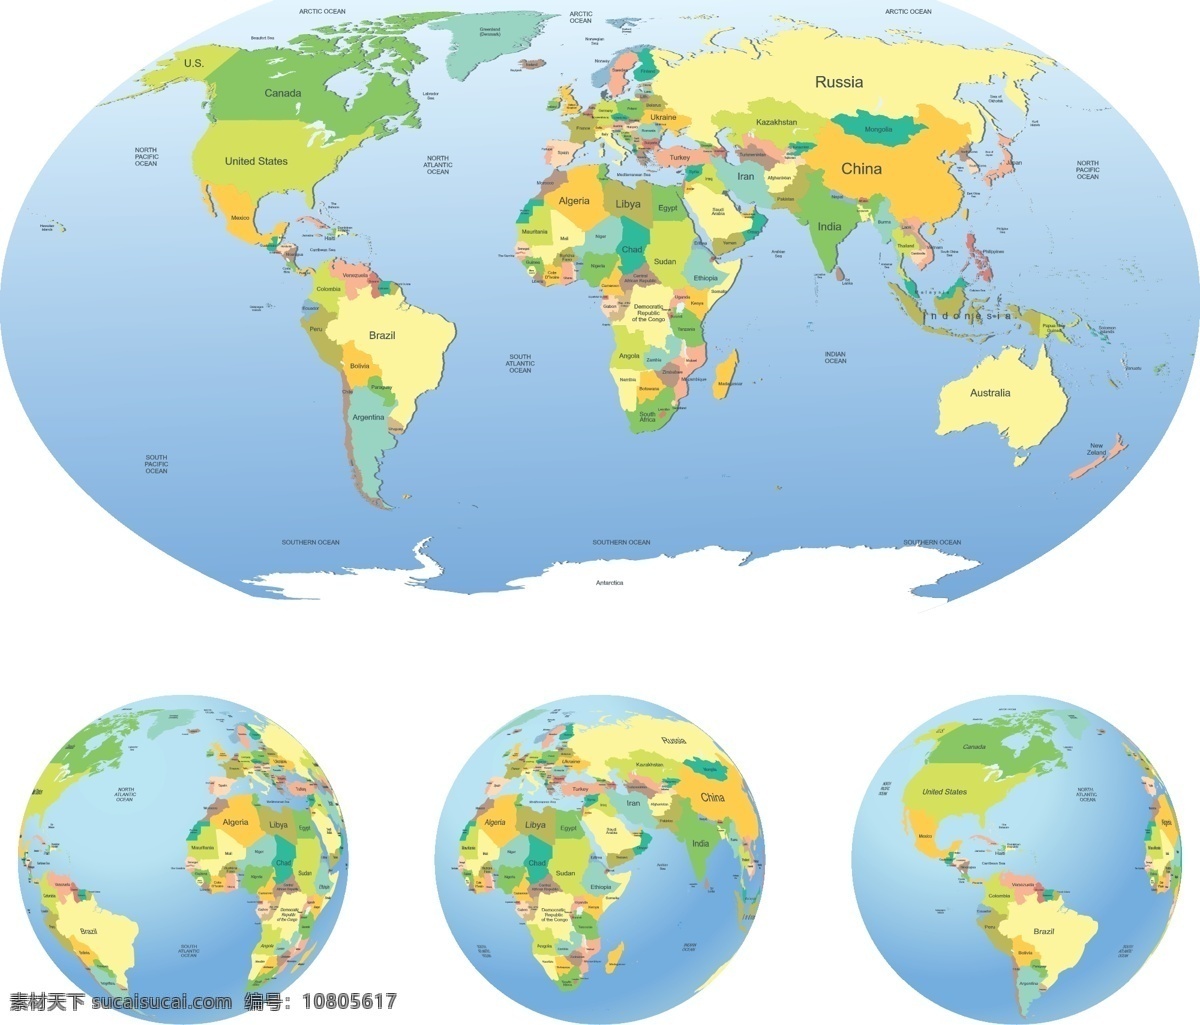 精美 世界地图 矢量 世界地理 全球世界 地图 七大洲 四 大洋 版图 环球 地形 白色